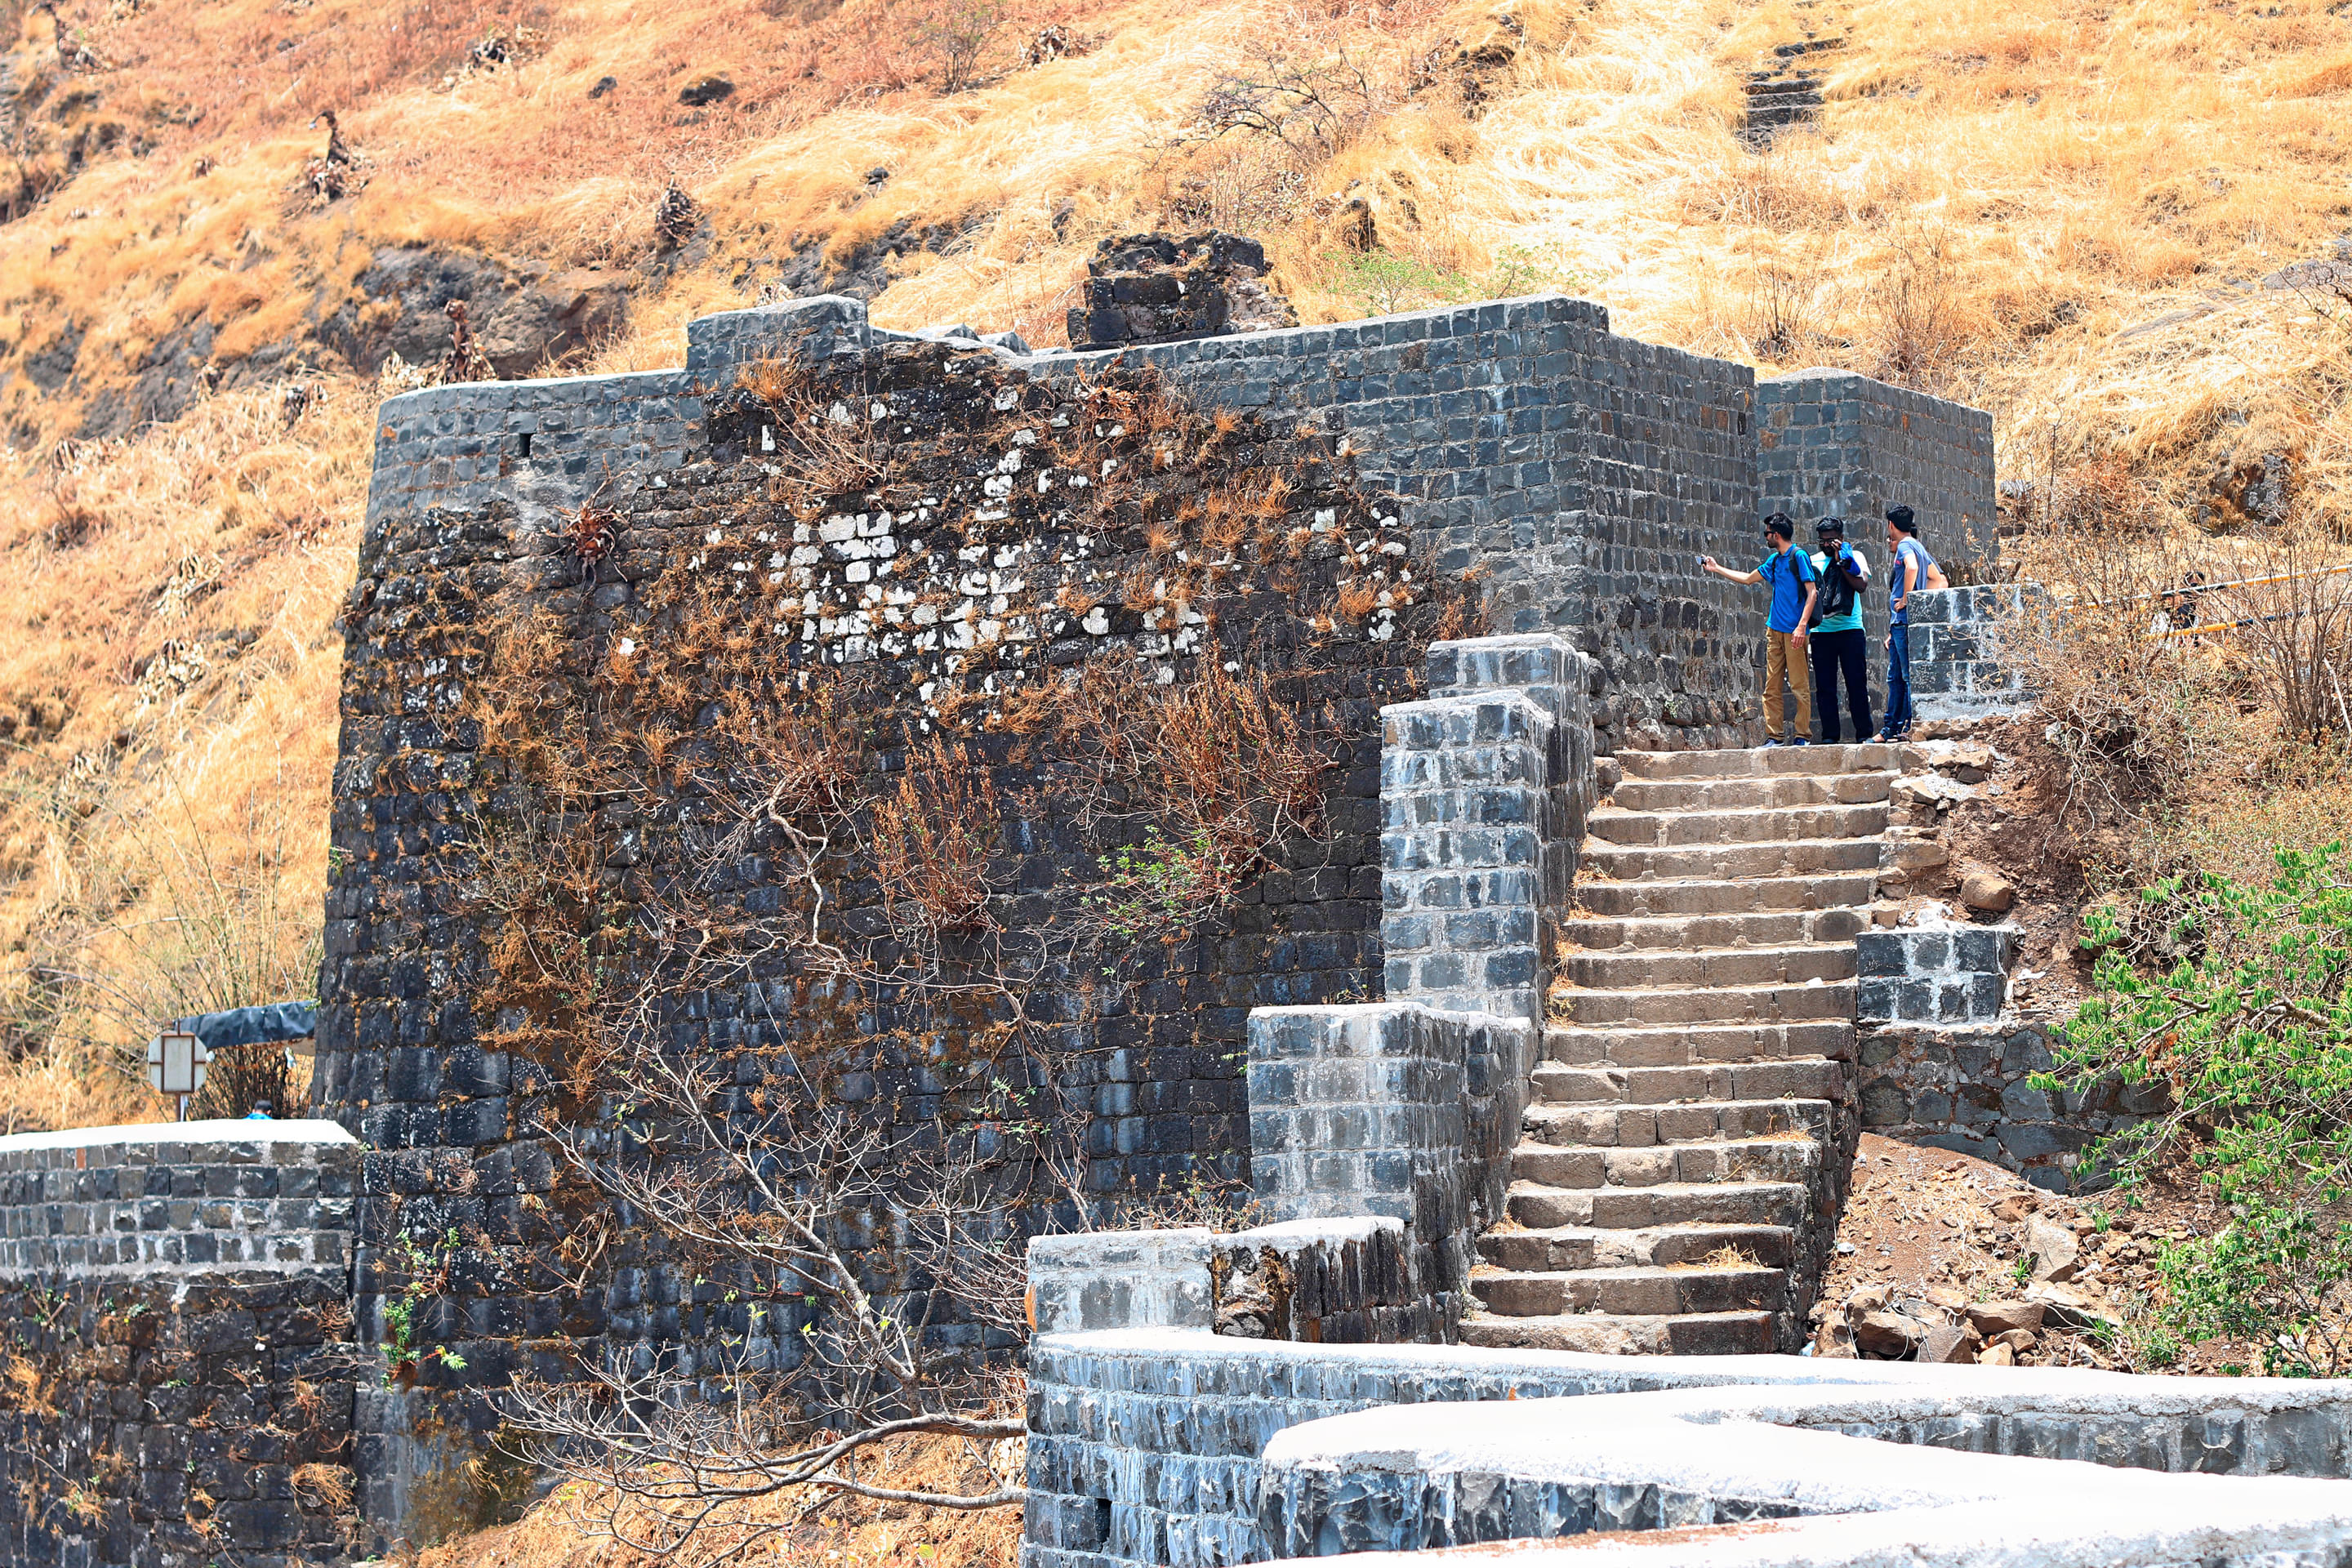 Sinhagad Fort Overview